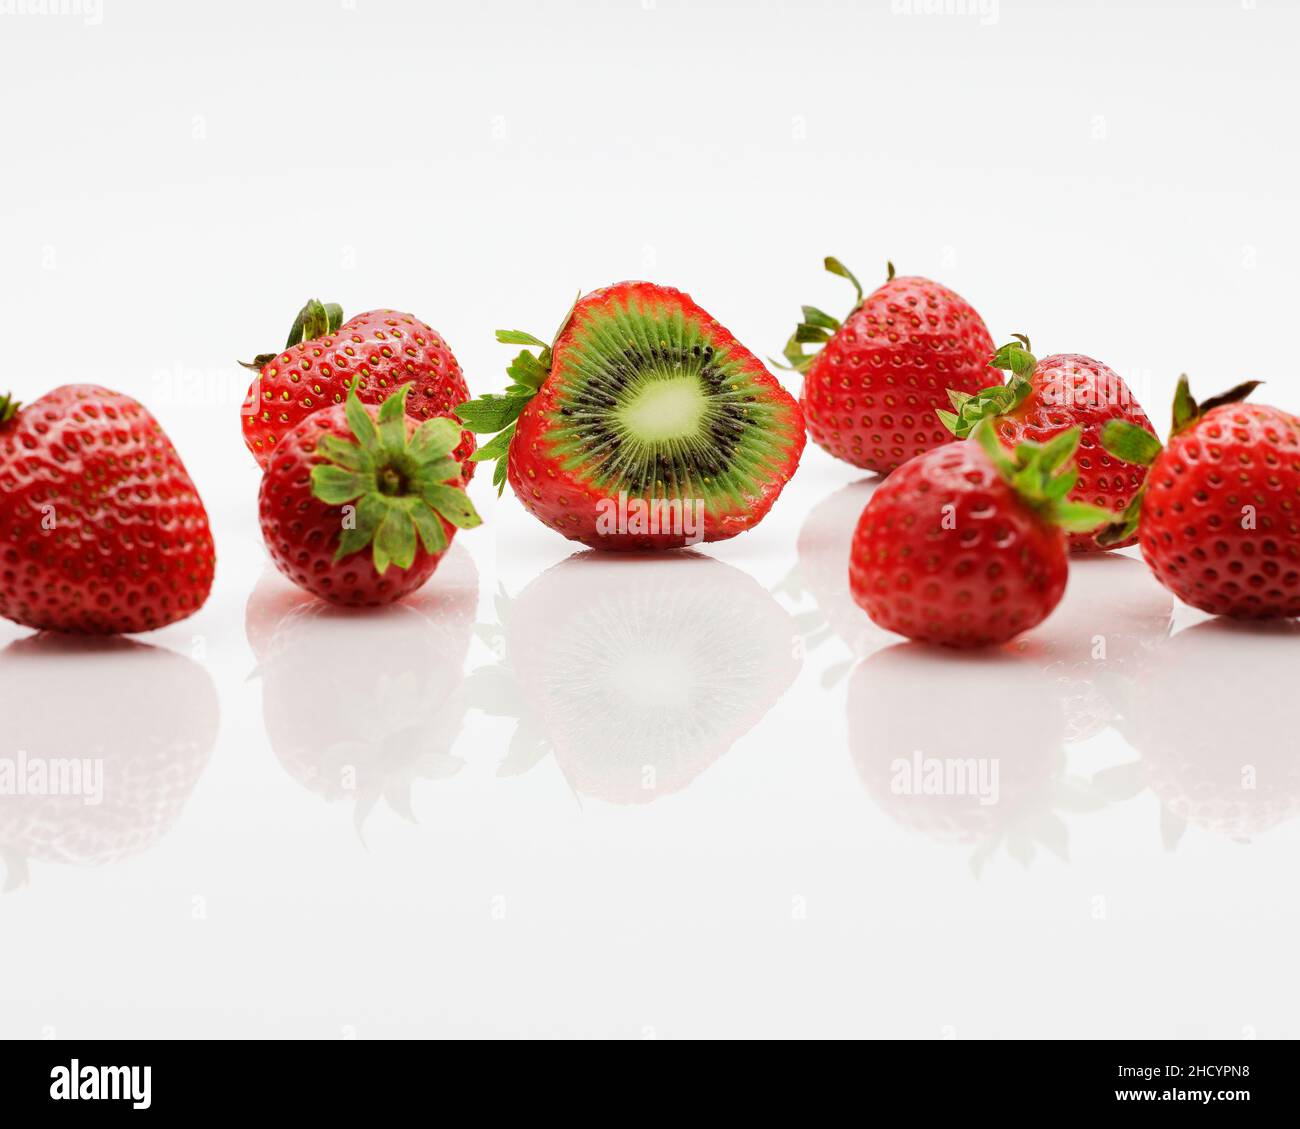 Un fruit hybride de fraises et de kiwis, coupé pour exposer la chair inhabituelle du fruit. Banque D'Images